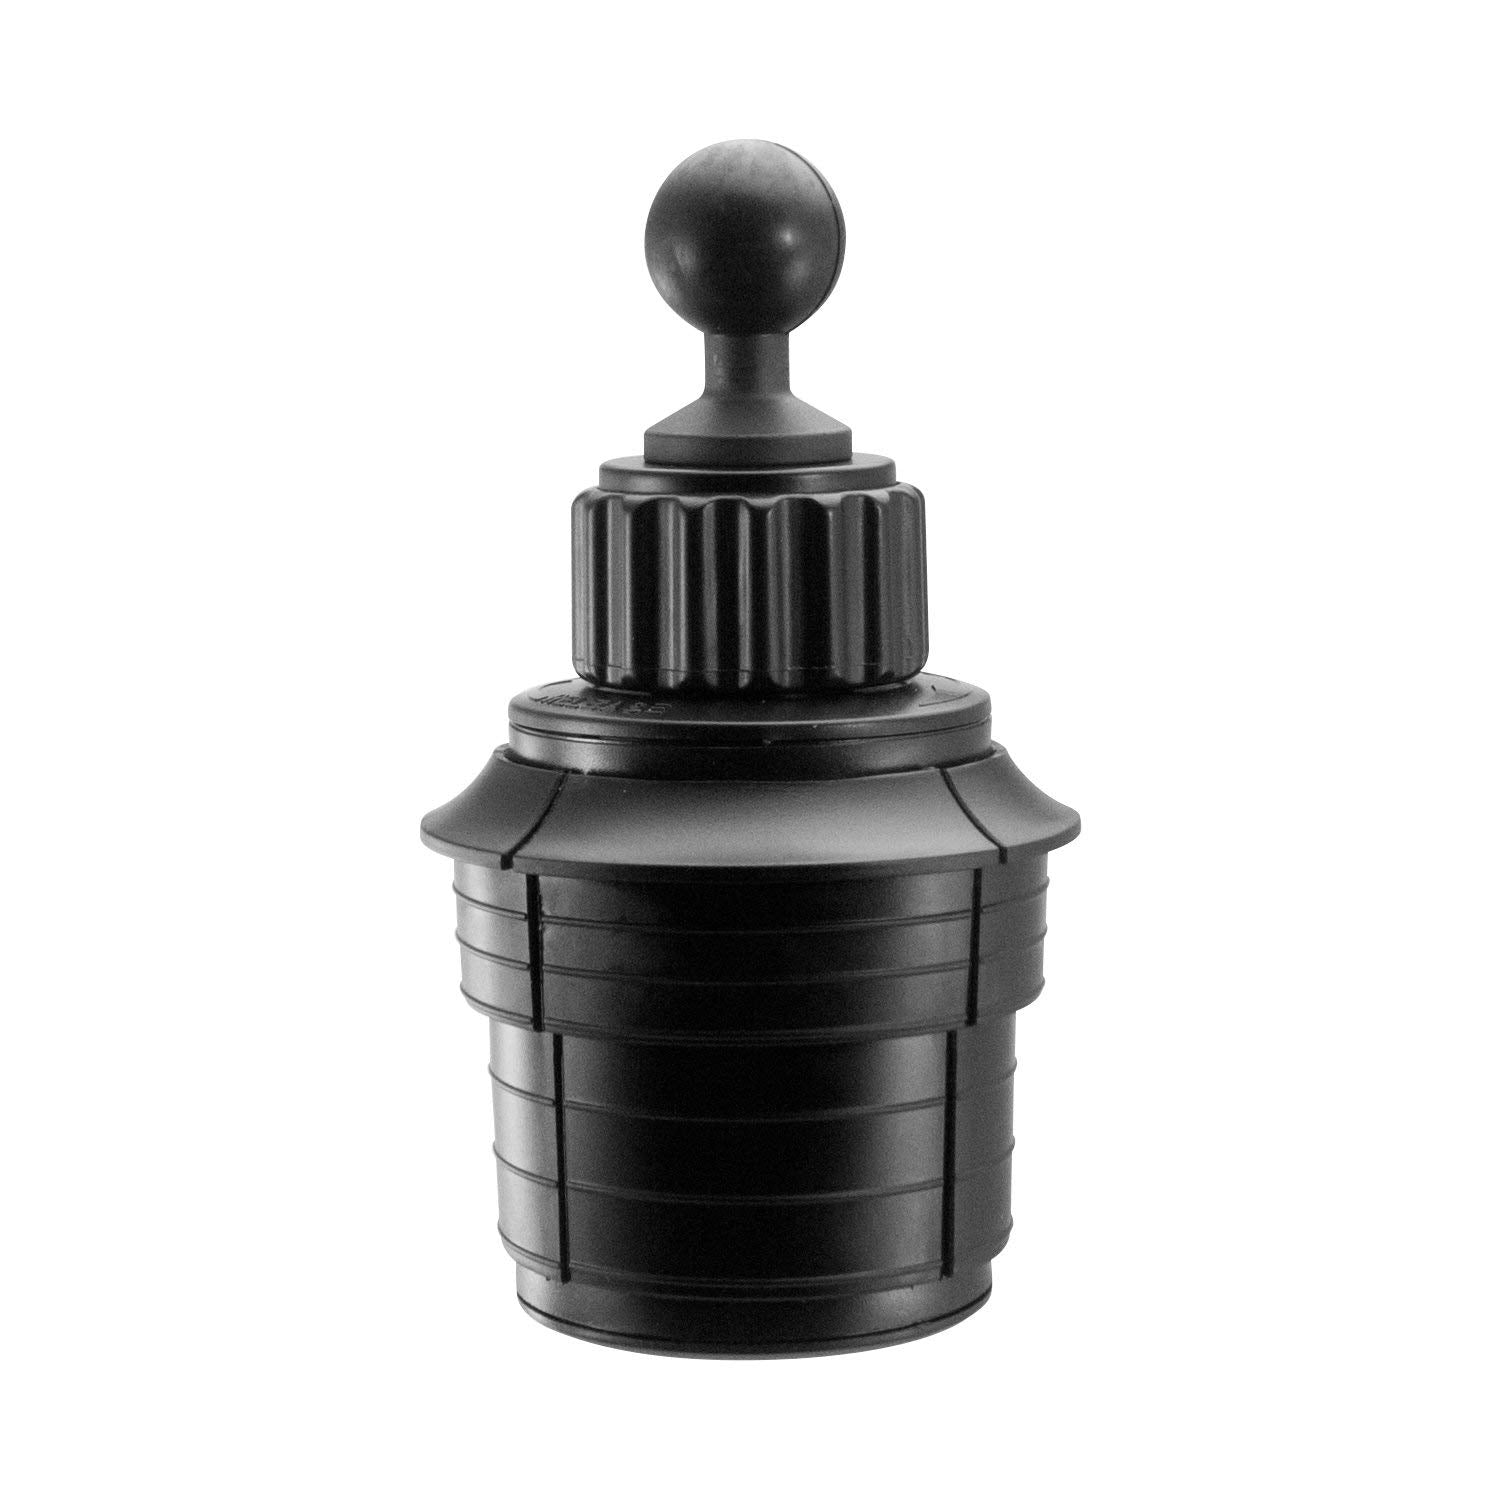 iBOLT™ 25mm/ 1 inch/ B Size Adjustable Cupholder Mount